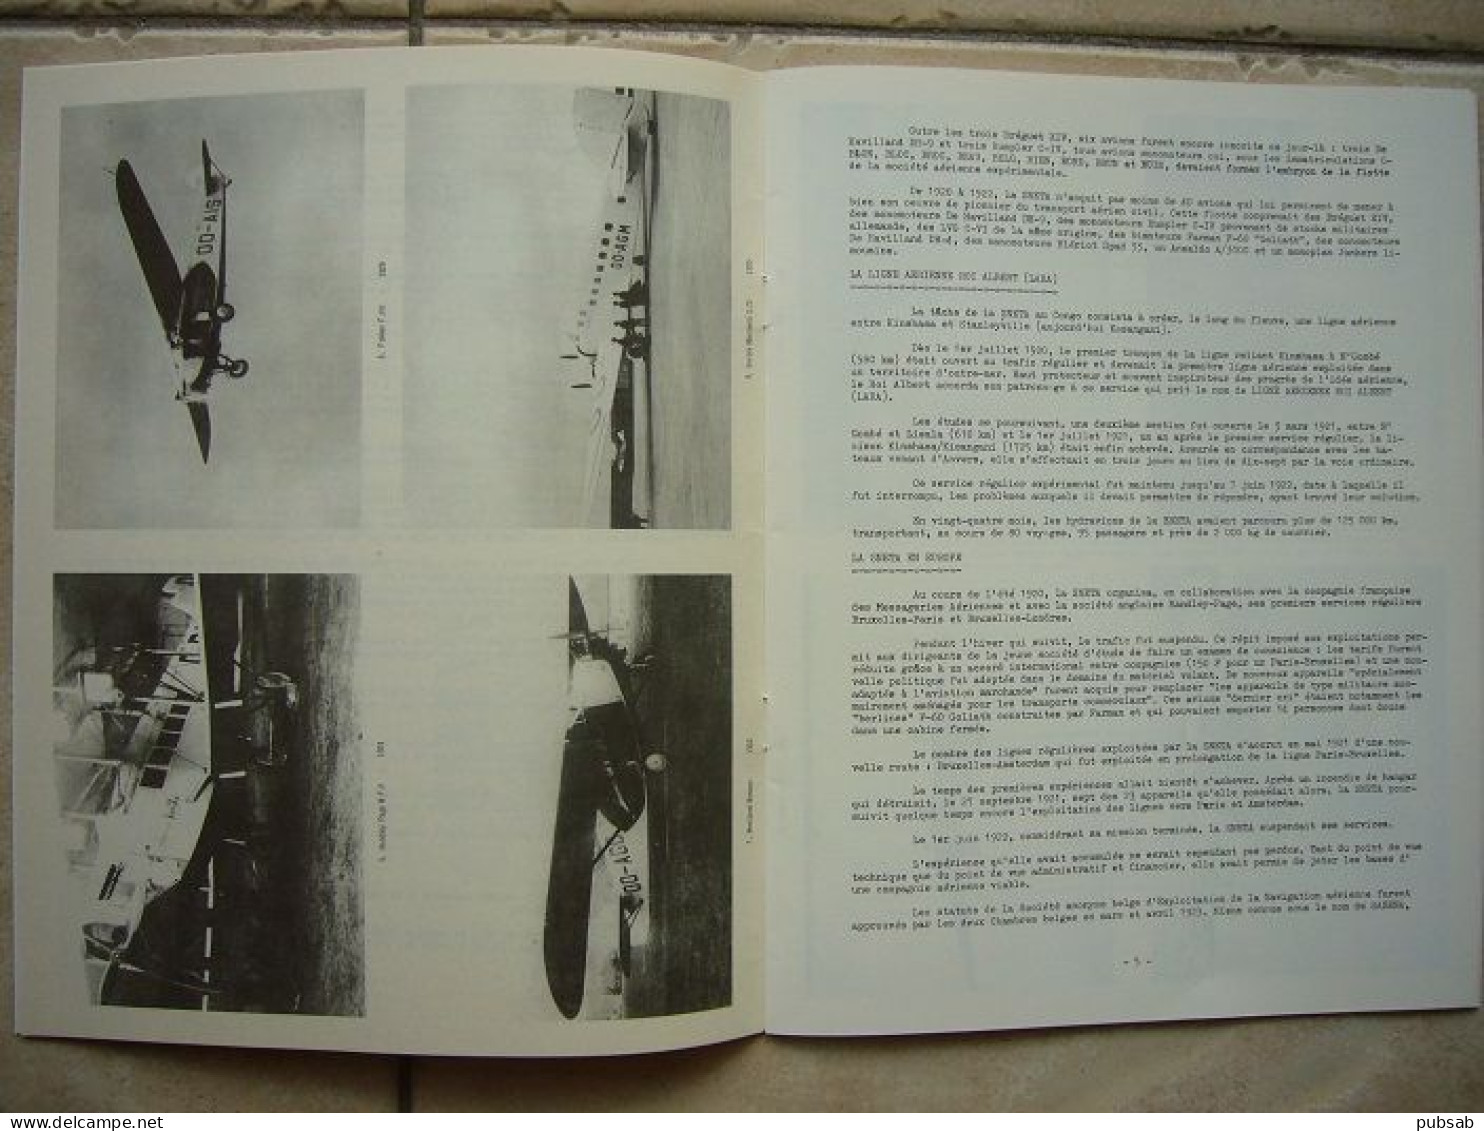 Avion / Airplane / SABENA / Un Demi Siècle D'expérience Du Transport Aérien / 1923 - 1973 / 20 Pages - Inflight Magazines